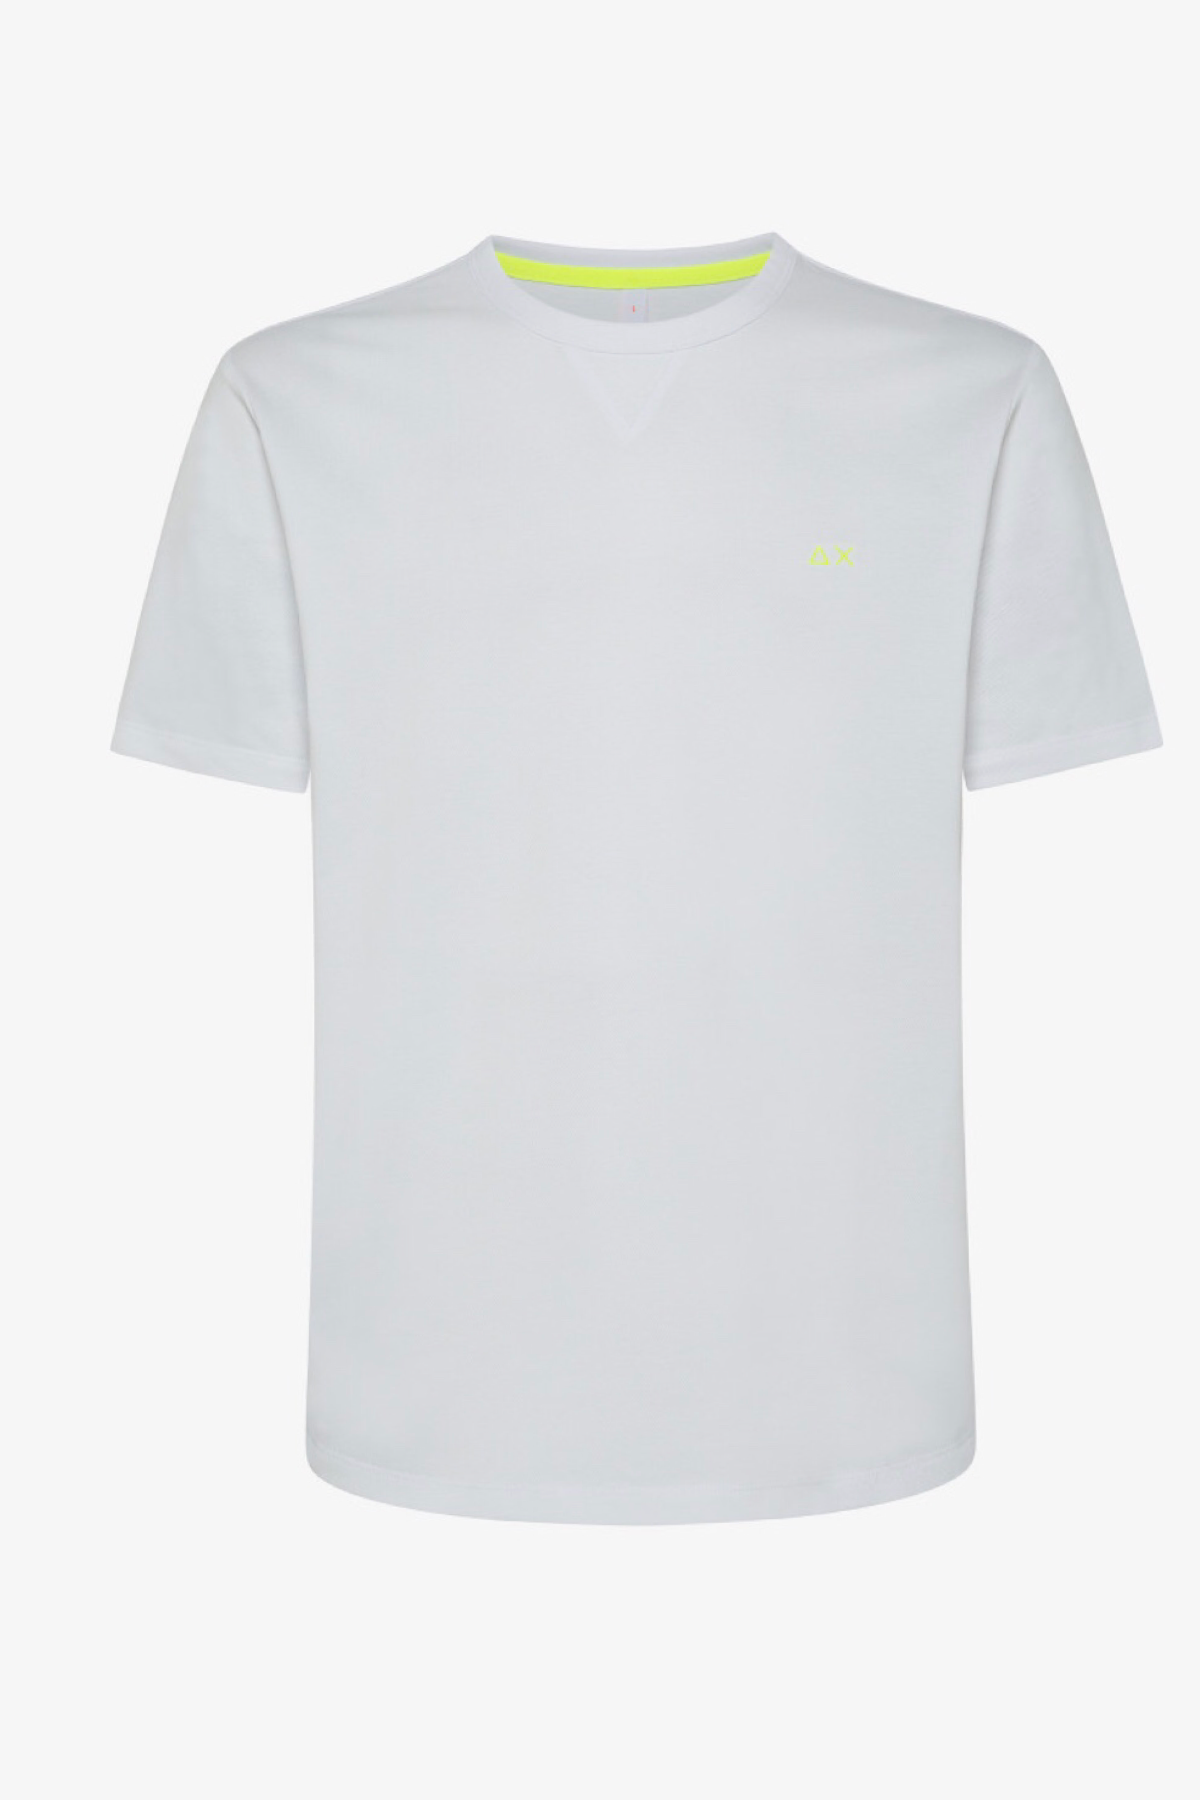 Sun68 t-shirt T33120 bianco